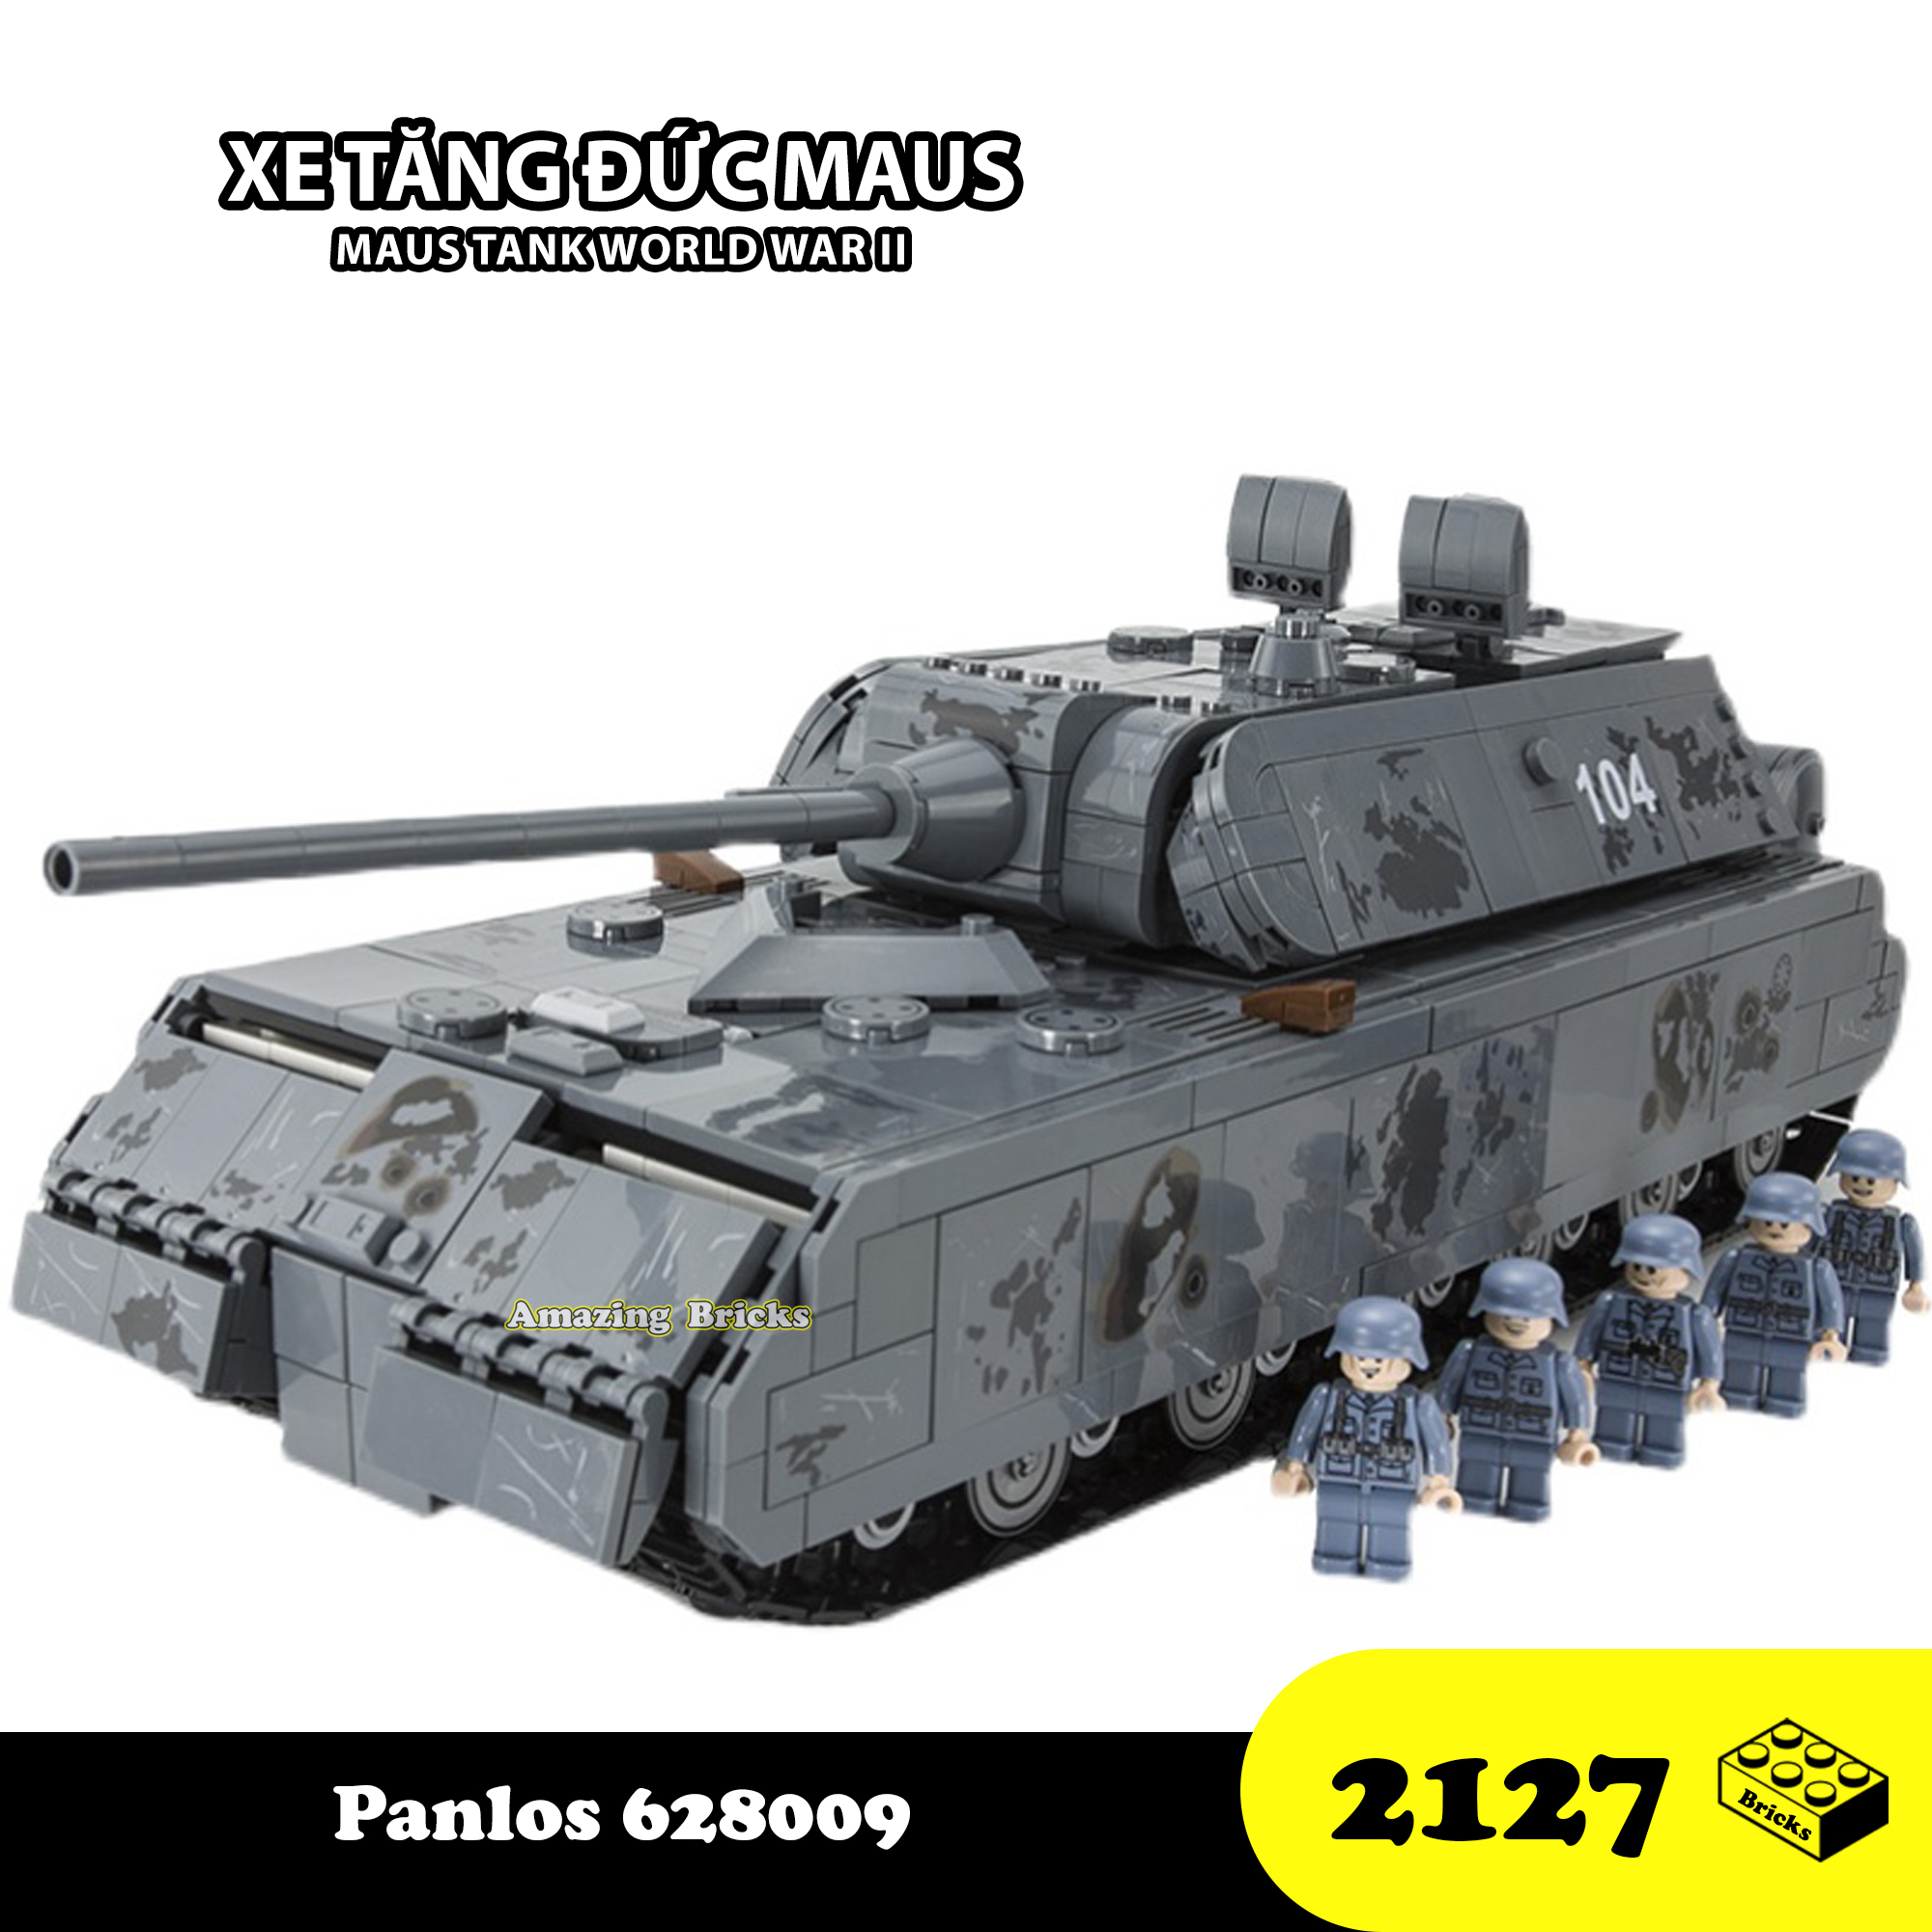 Đồ chơi Lắp ráp Xe Tăng Đức hạng nặng Maus, Panlos 628009 War World II Tank